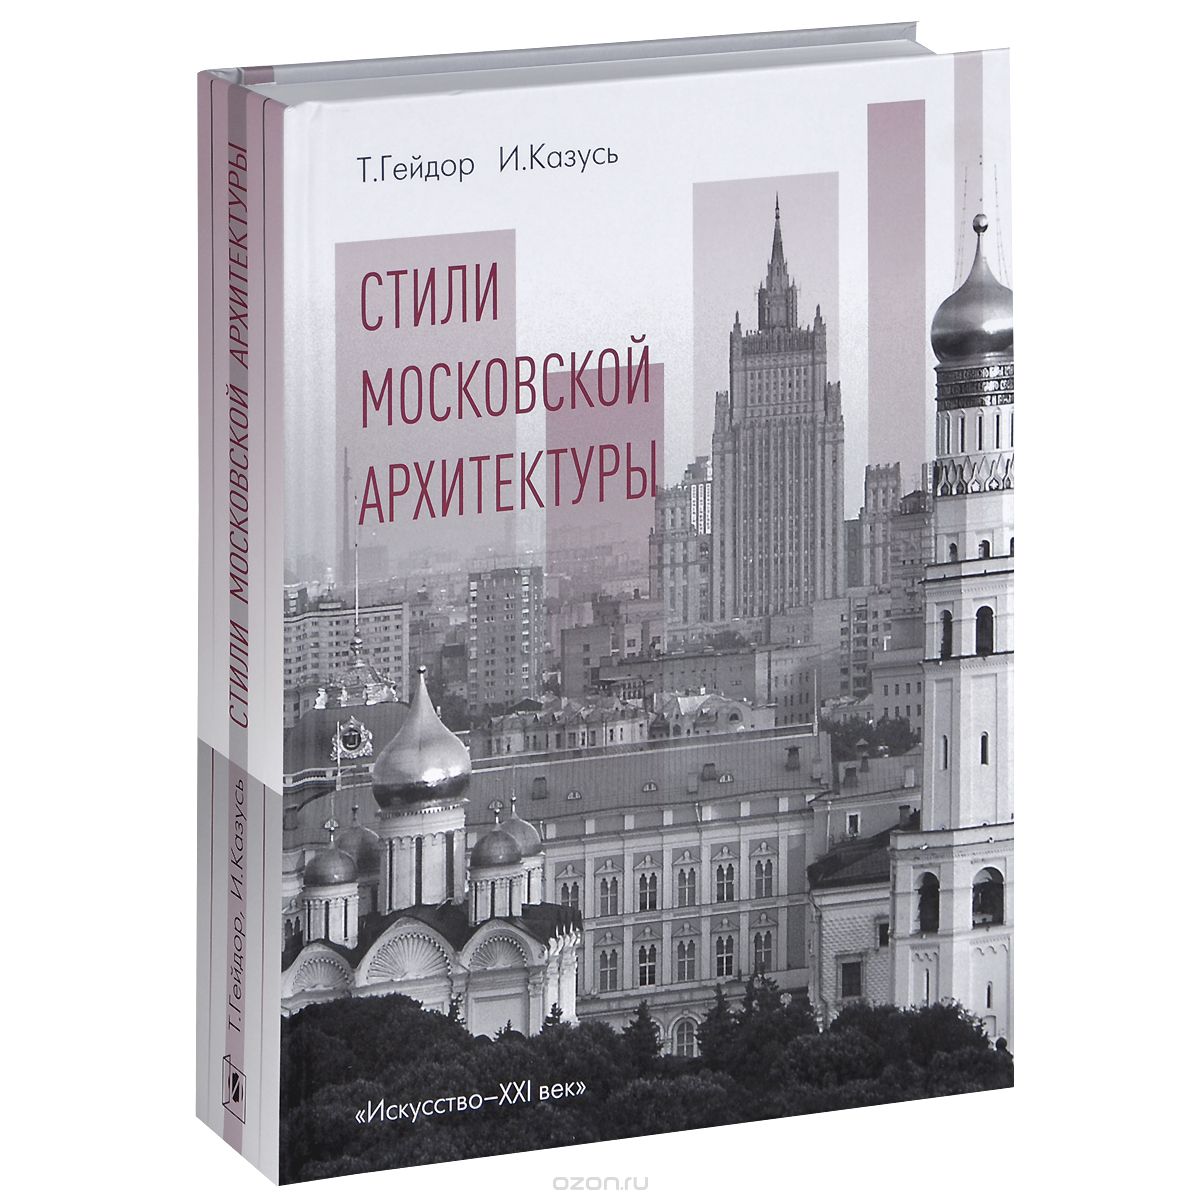 Стили московской архитектуры, Т. Гейдор, И. Казусь